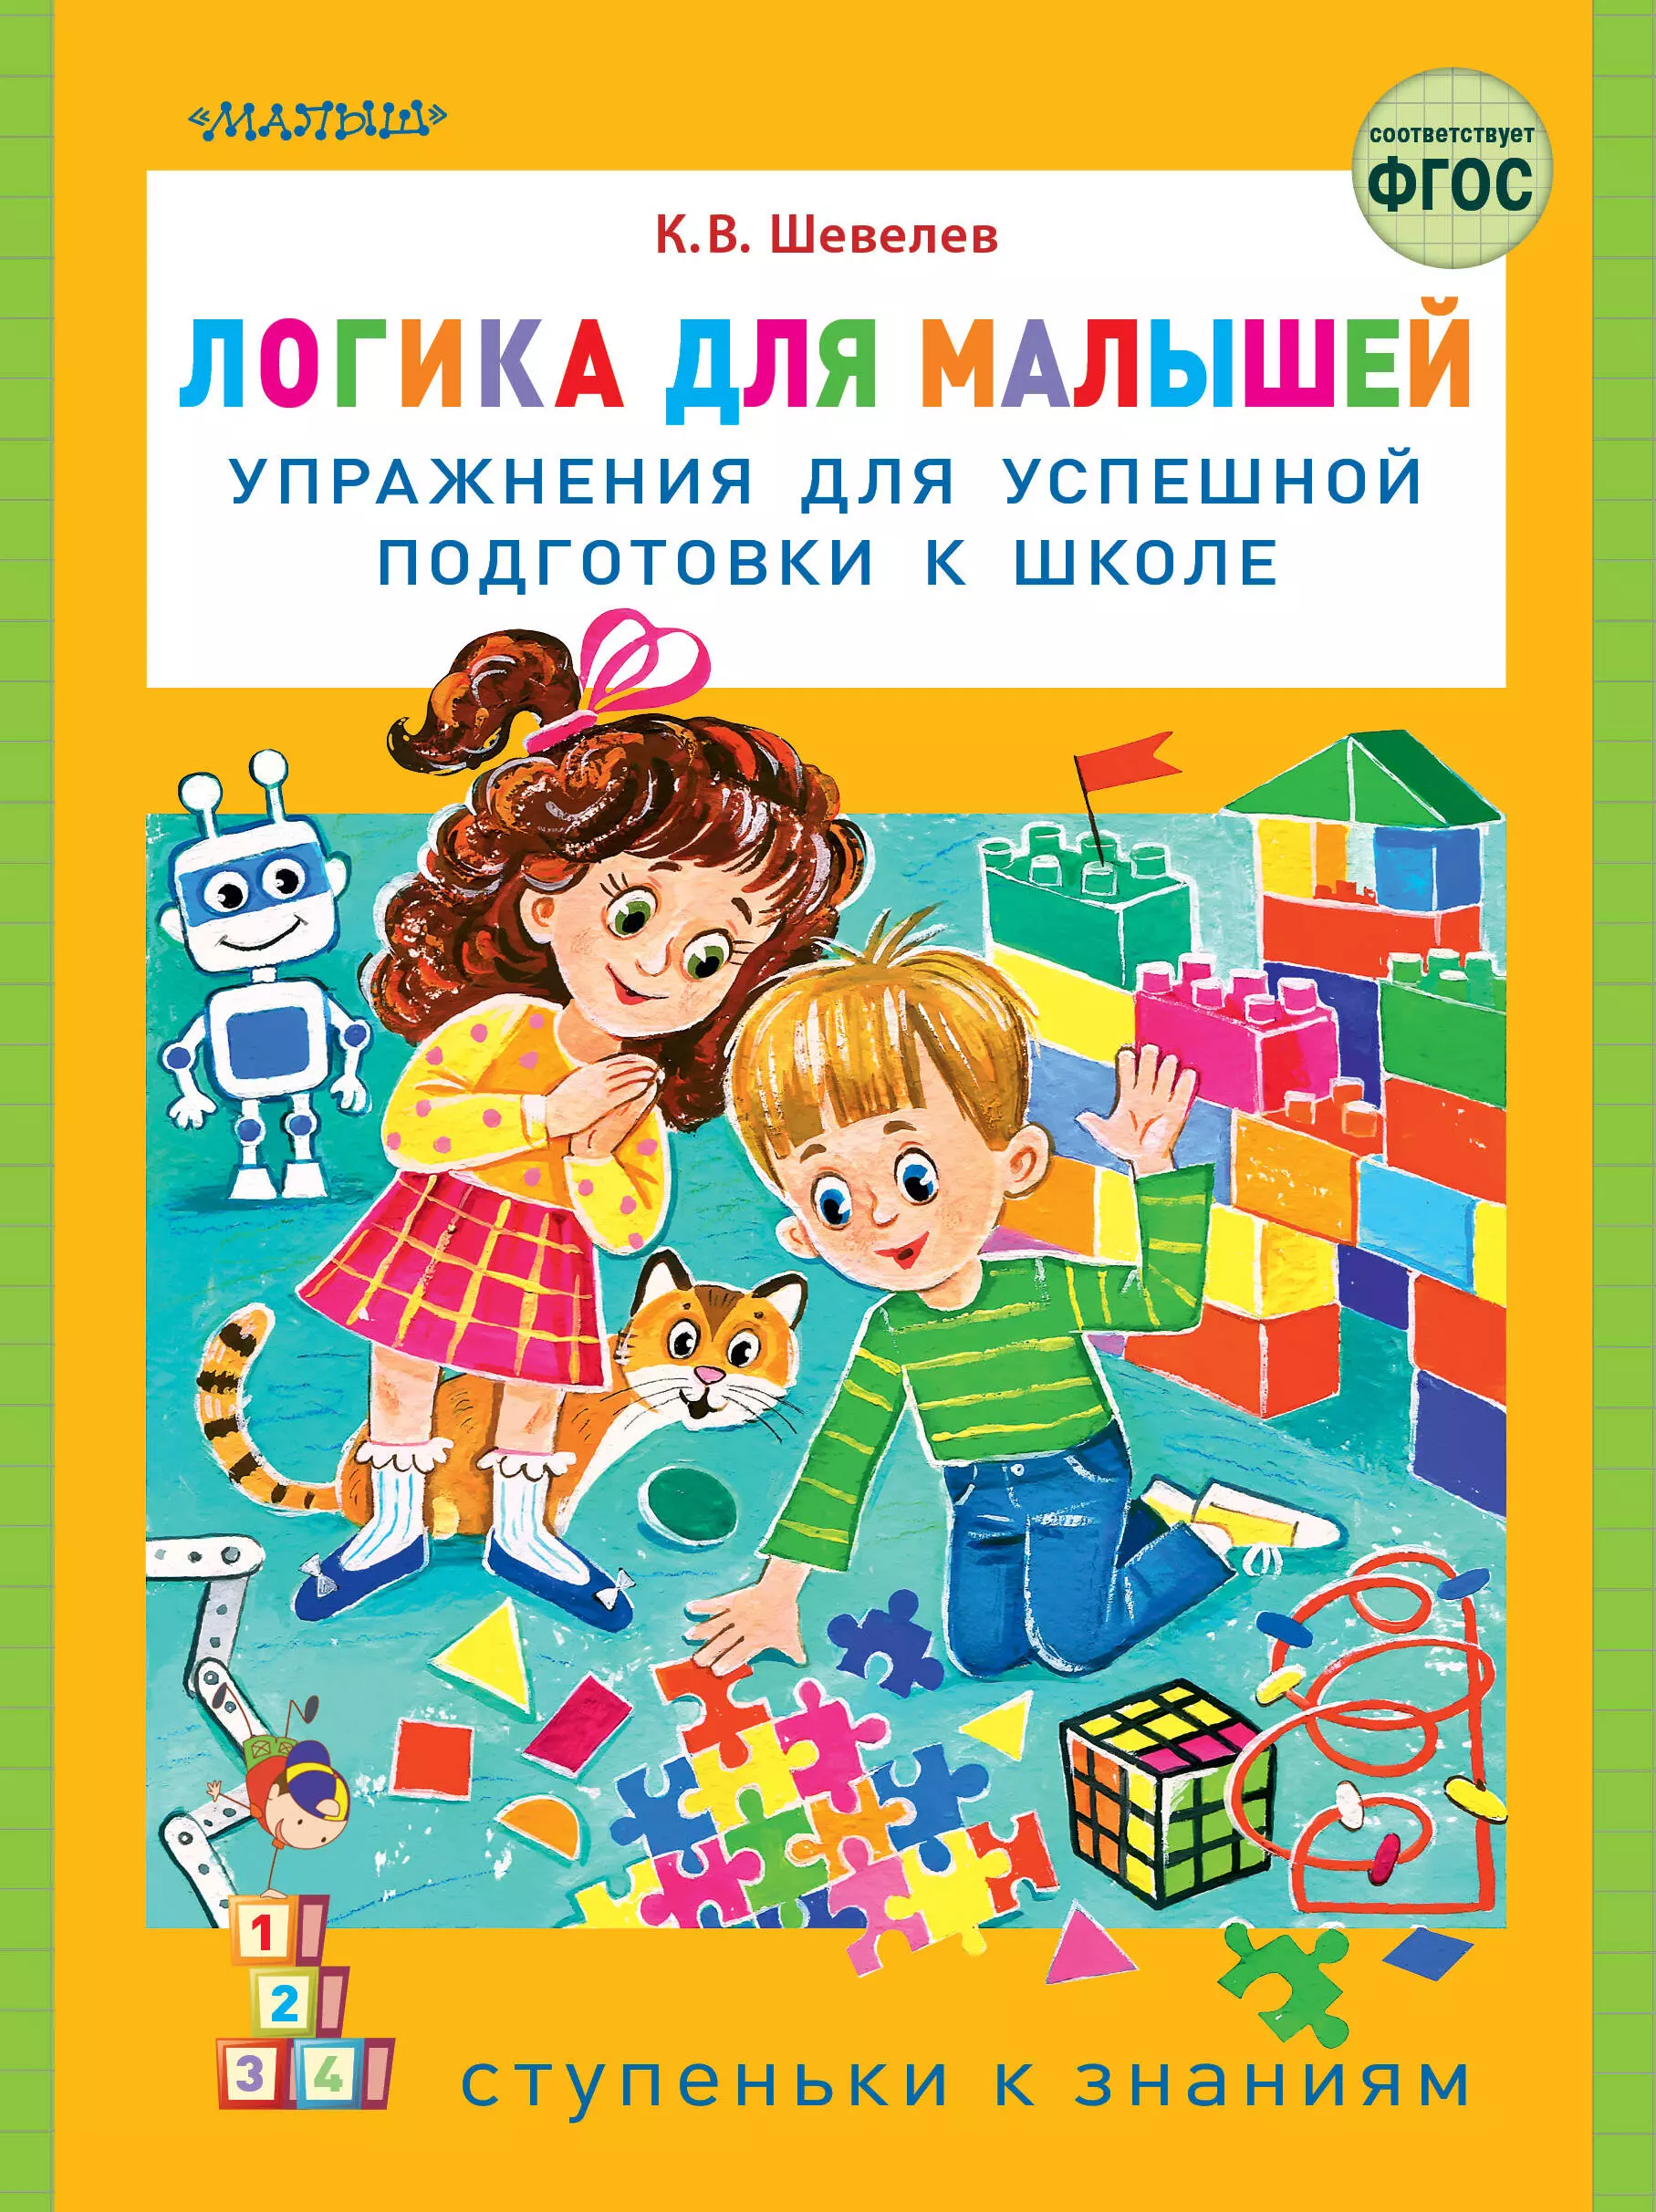 Шевелев Константин Валерьевич - Логика для малышей: упражнения для успешной подготовки к школе